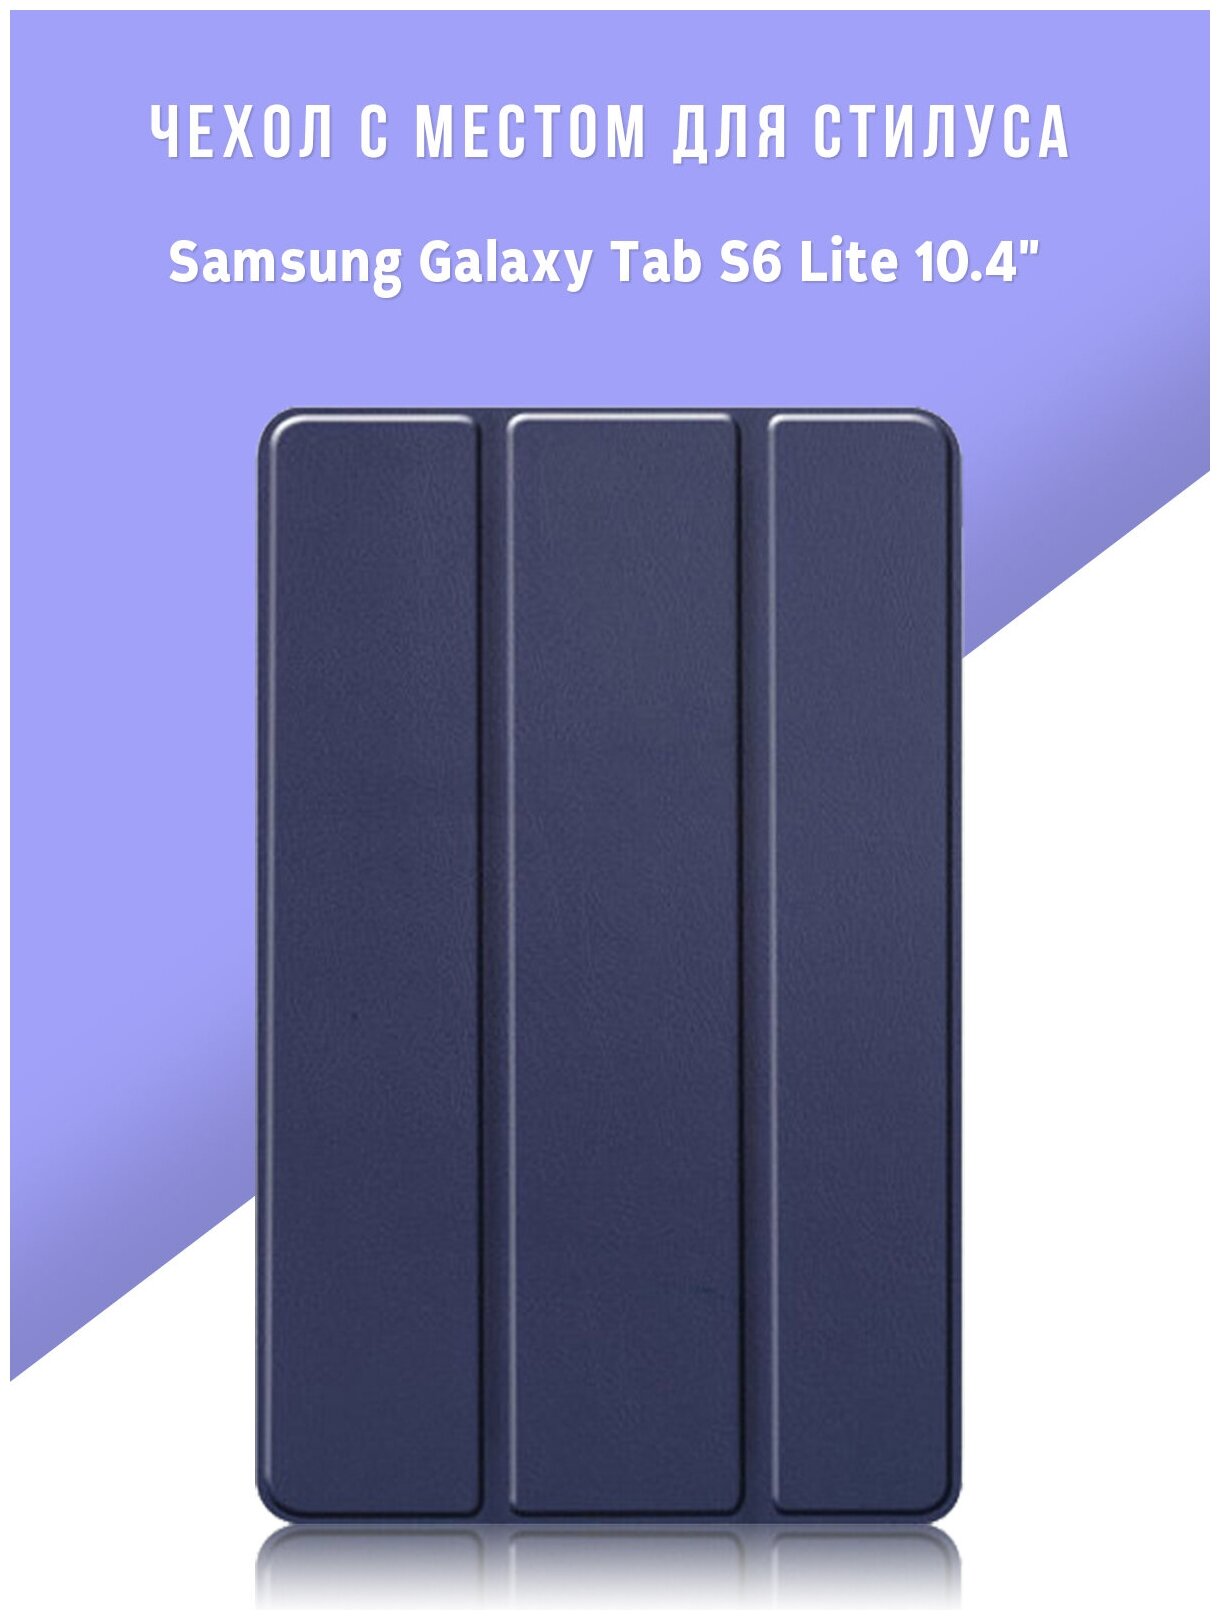 Чехол для планшета Samsung Galaxy Tab S6 Lite 10.4" с местом для стилуса S Pen, тёмно-синий